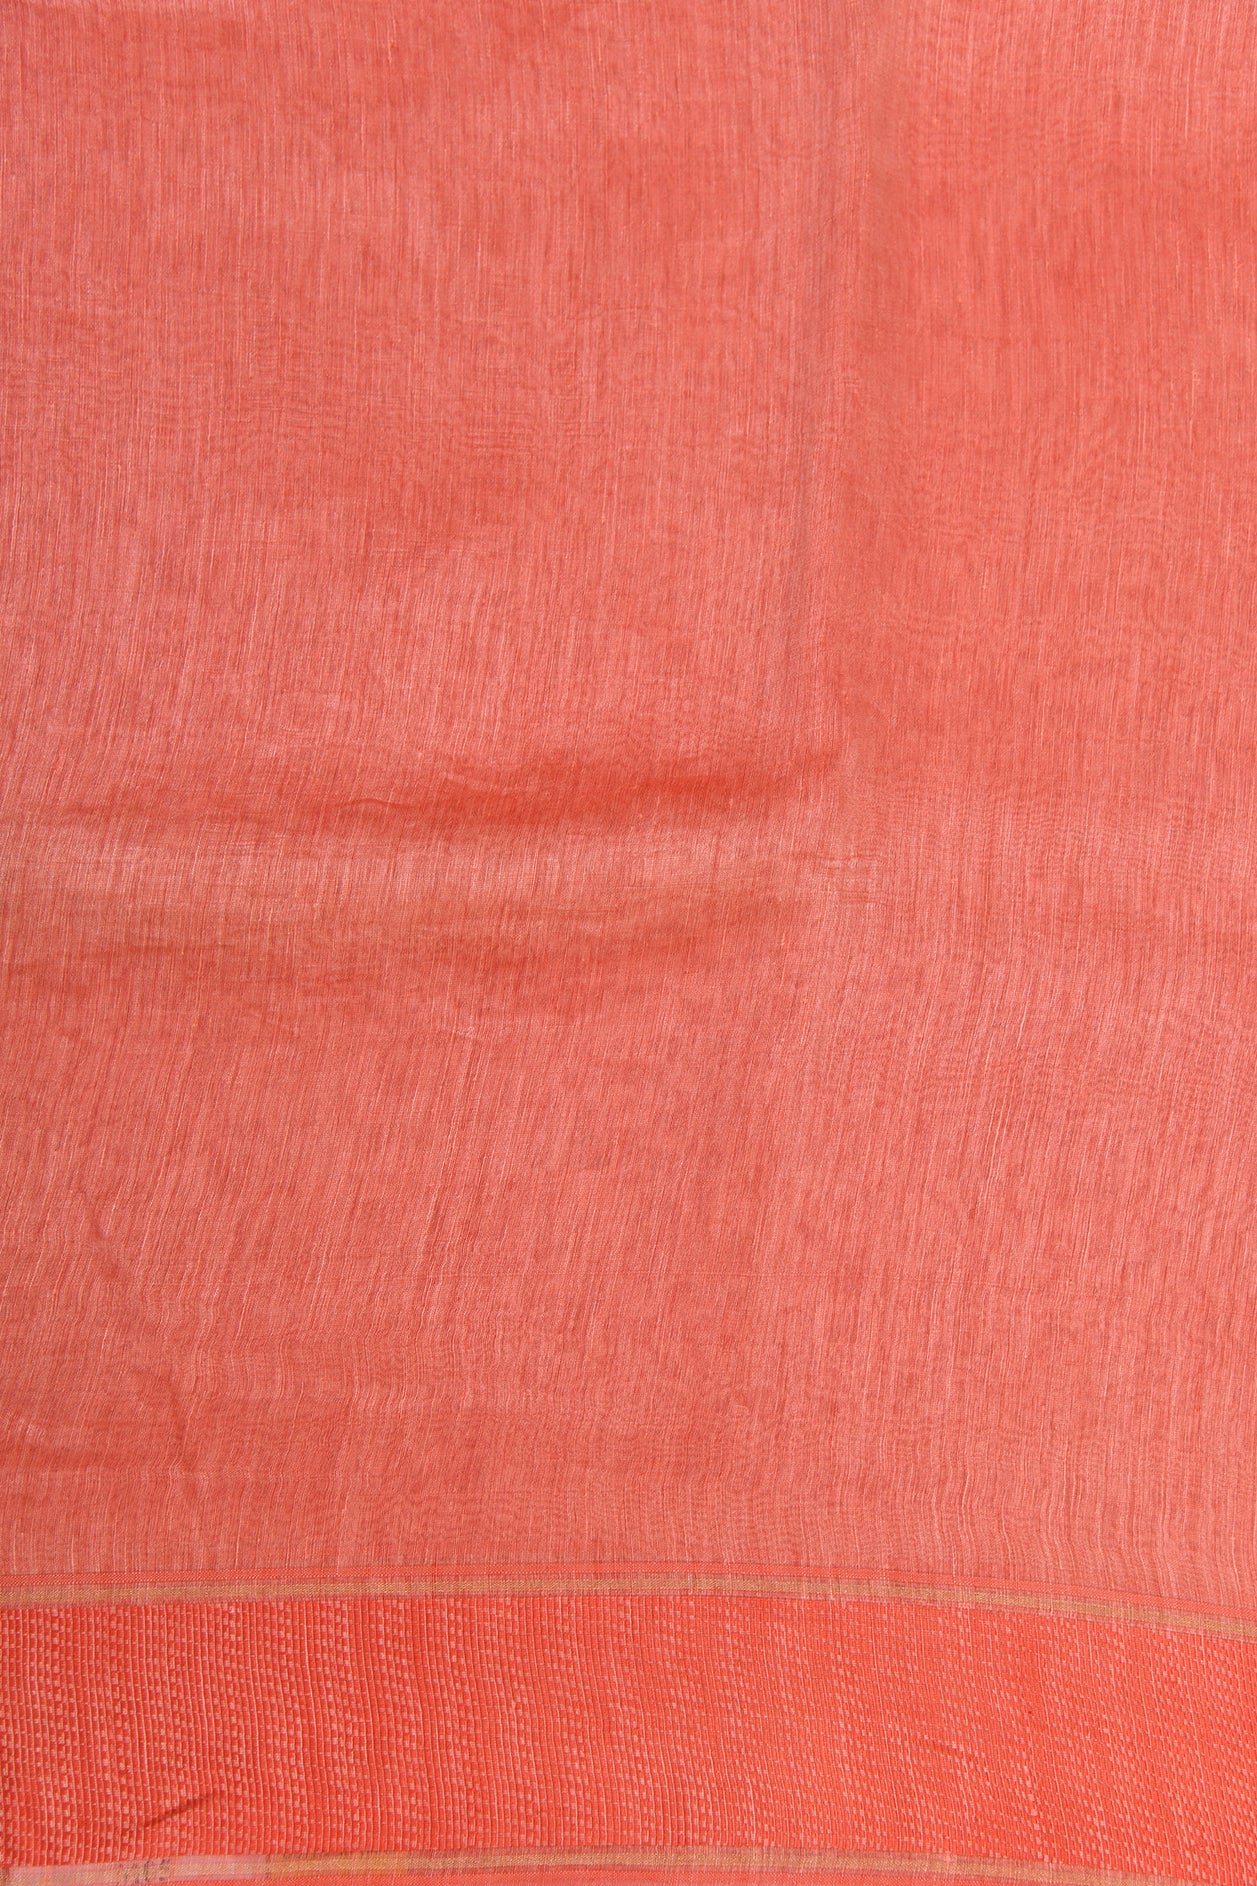 Thread Work Woven Border In Plain Salmon Pink Linen Cotton Saree